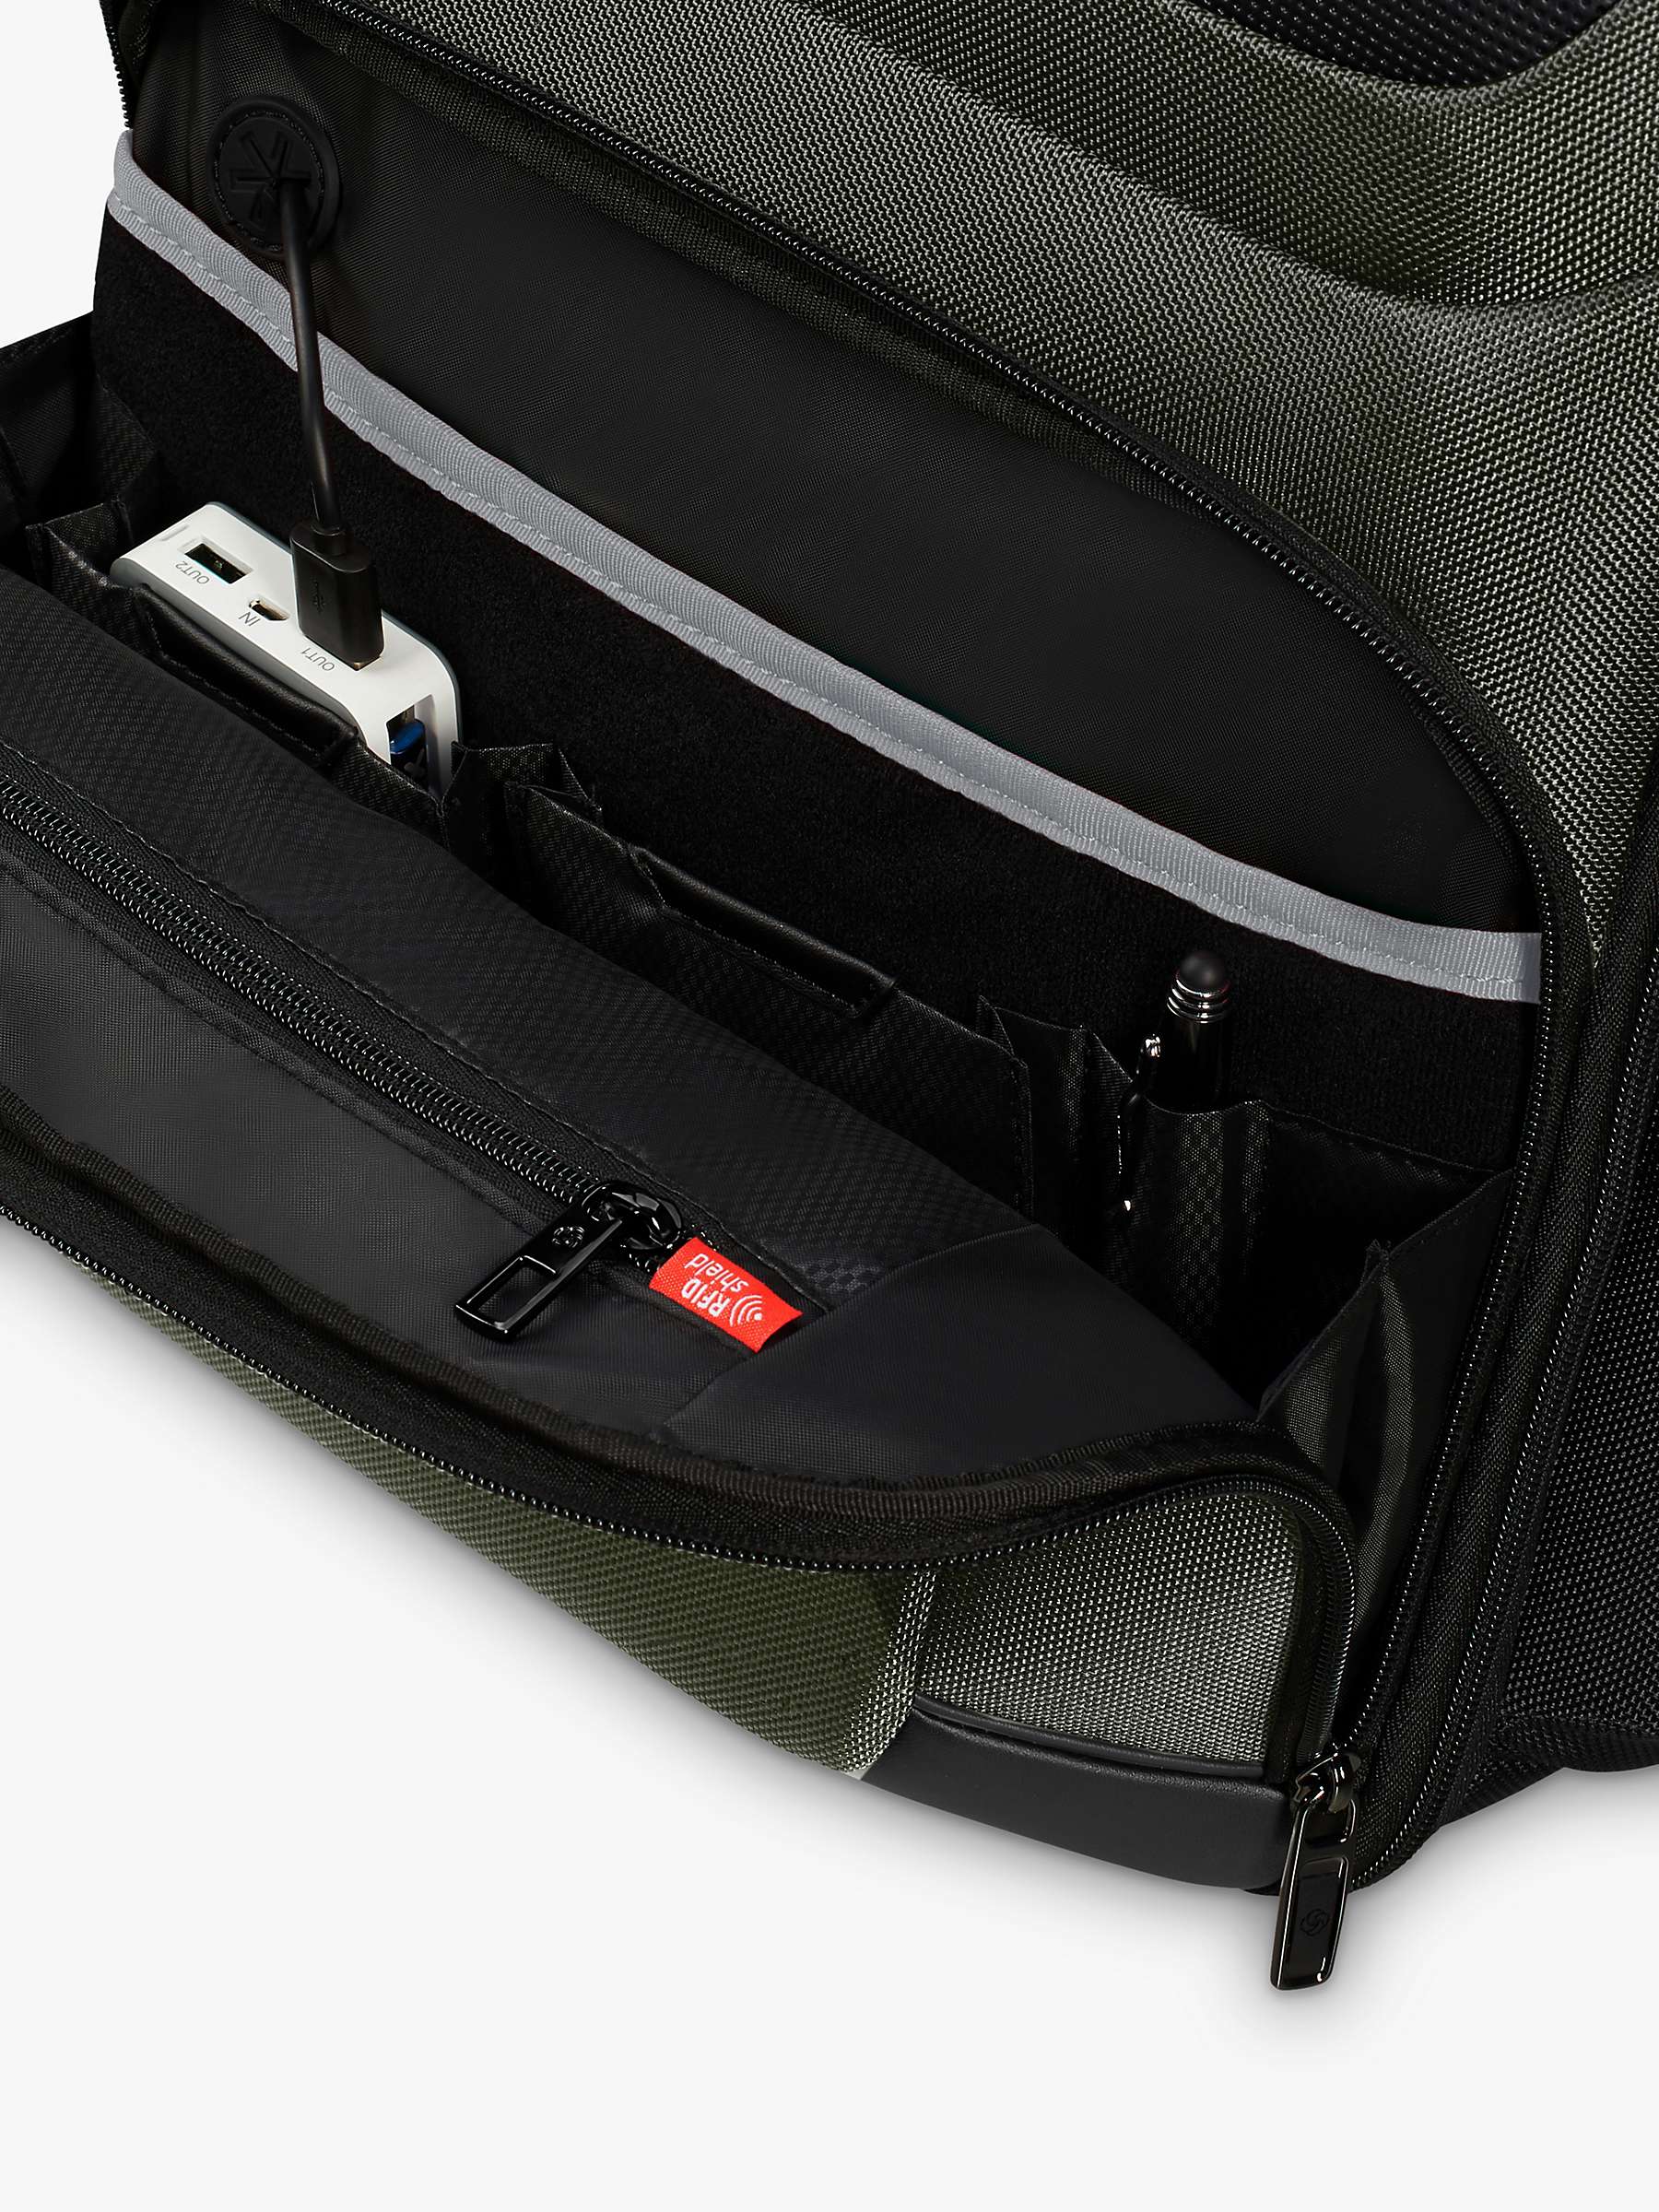 Buy Samsonite Pro-DLX 6 Backpack, Green Online at johnlewis.com